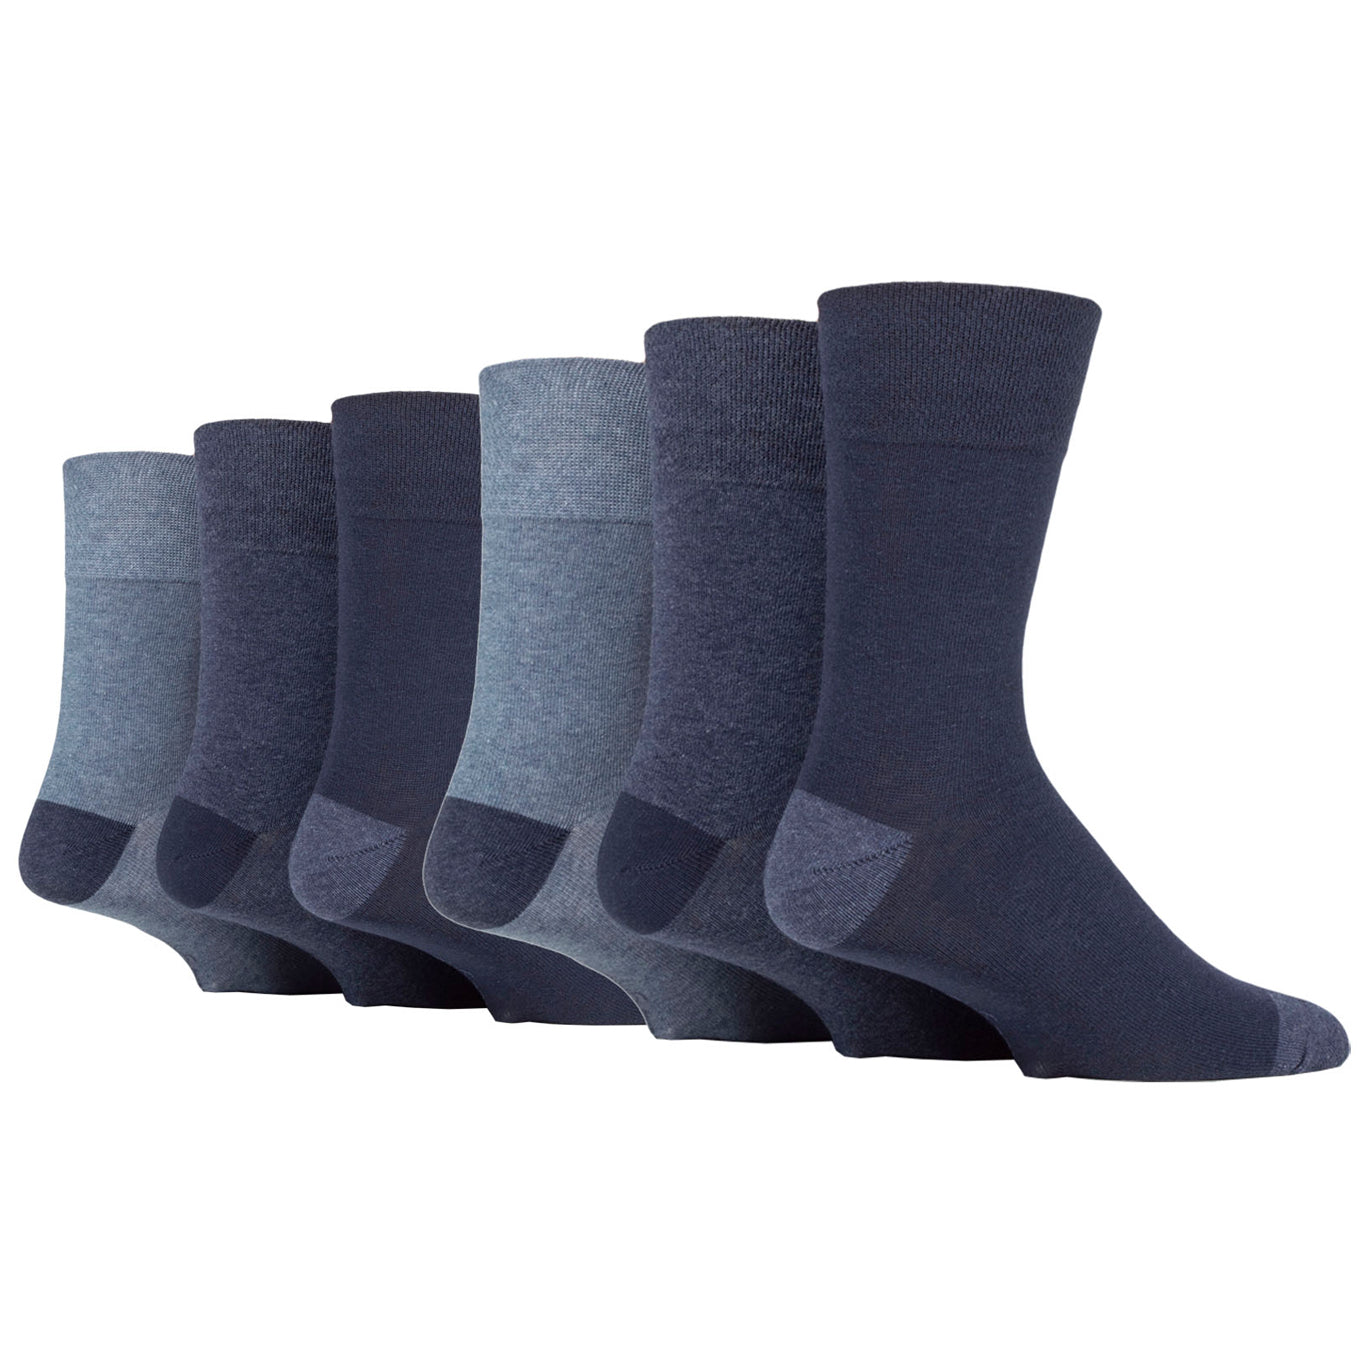 6 Pairs Men's Gentle Grip Cotton Socks Apex Contrast Heel & Toe Navy/Denim